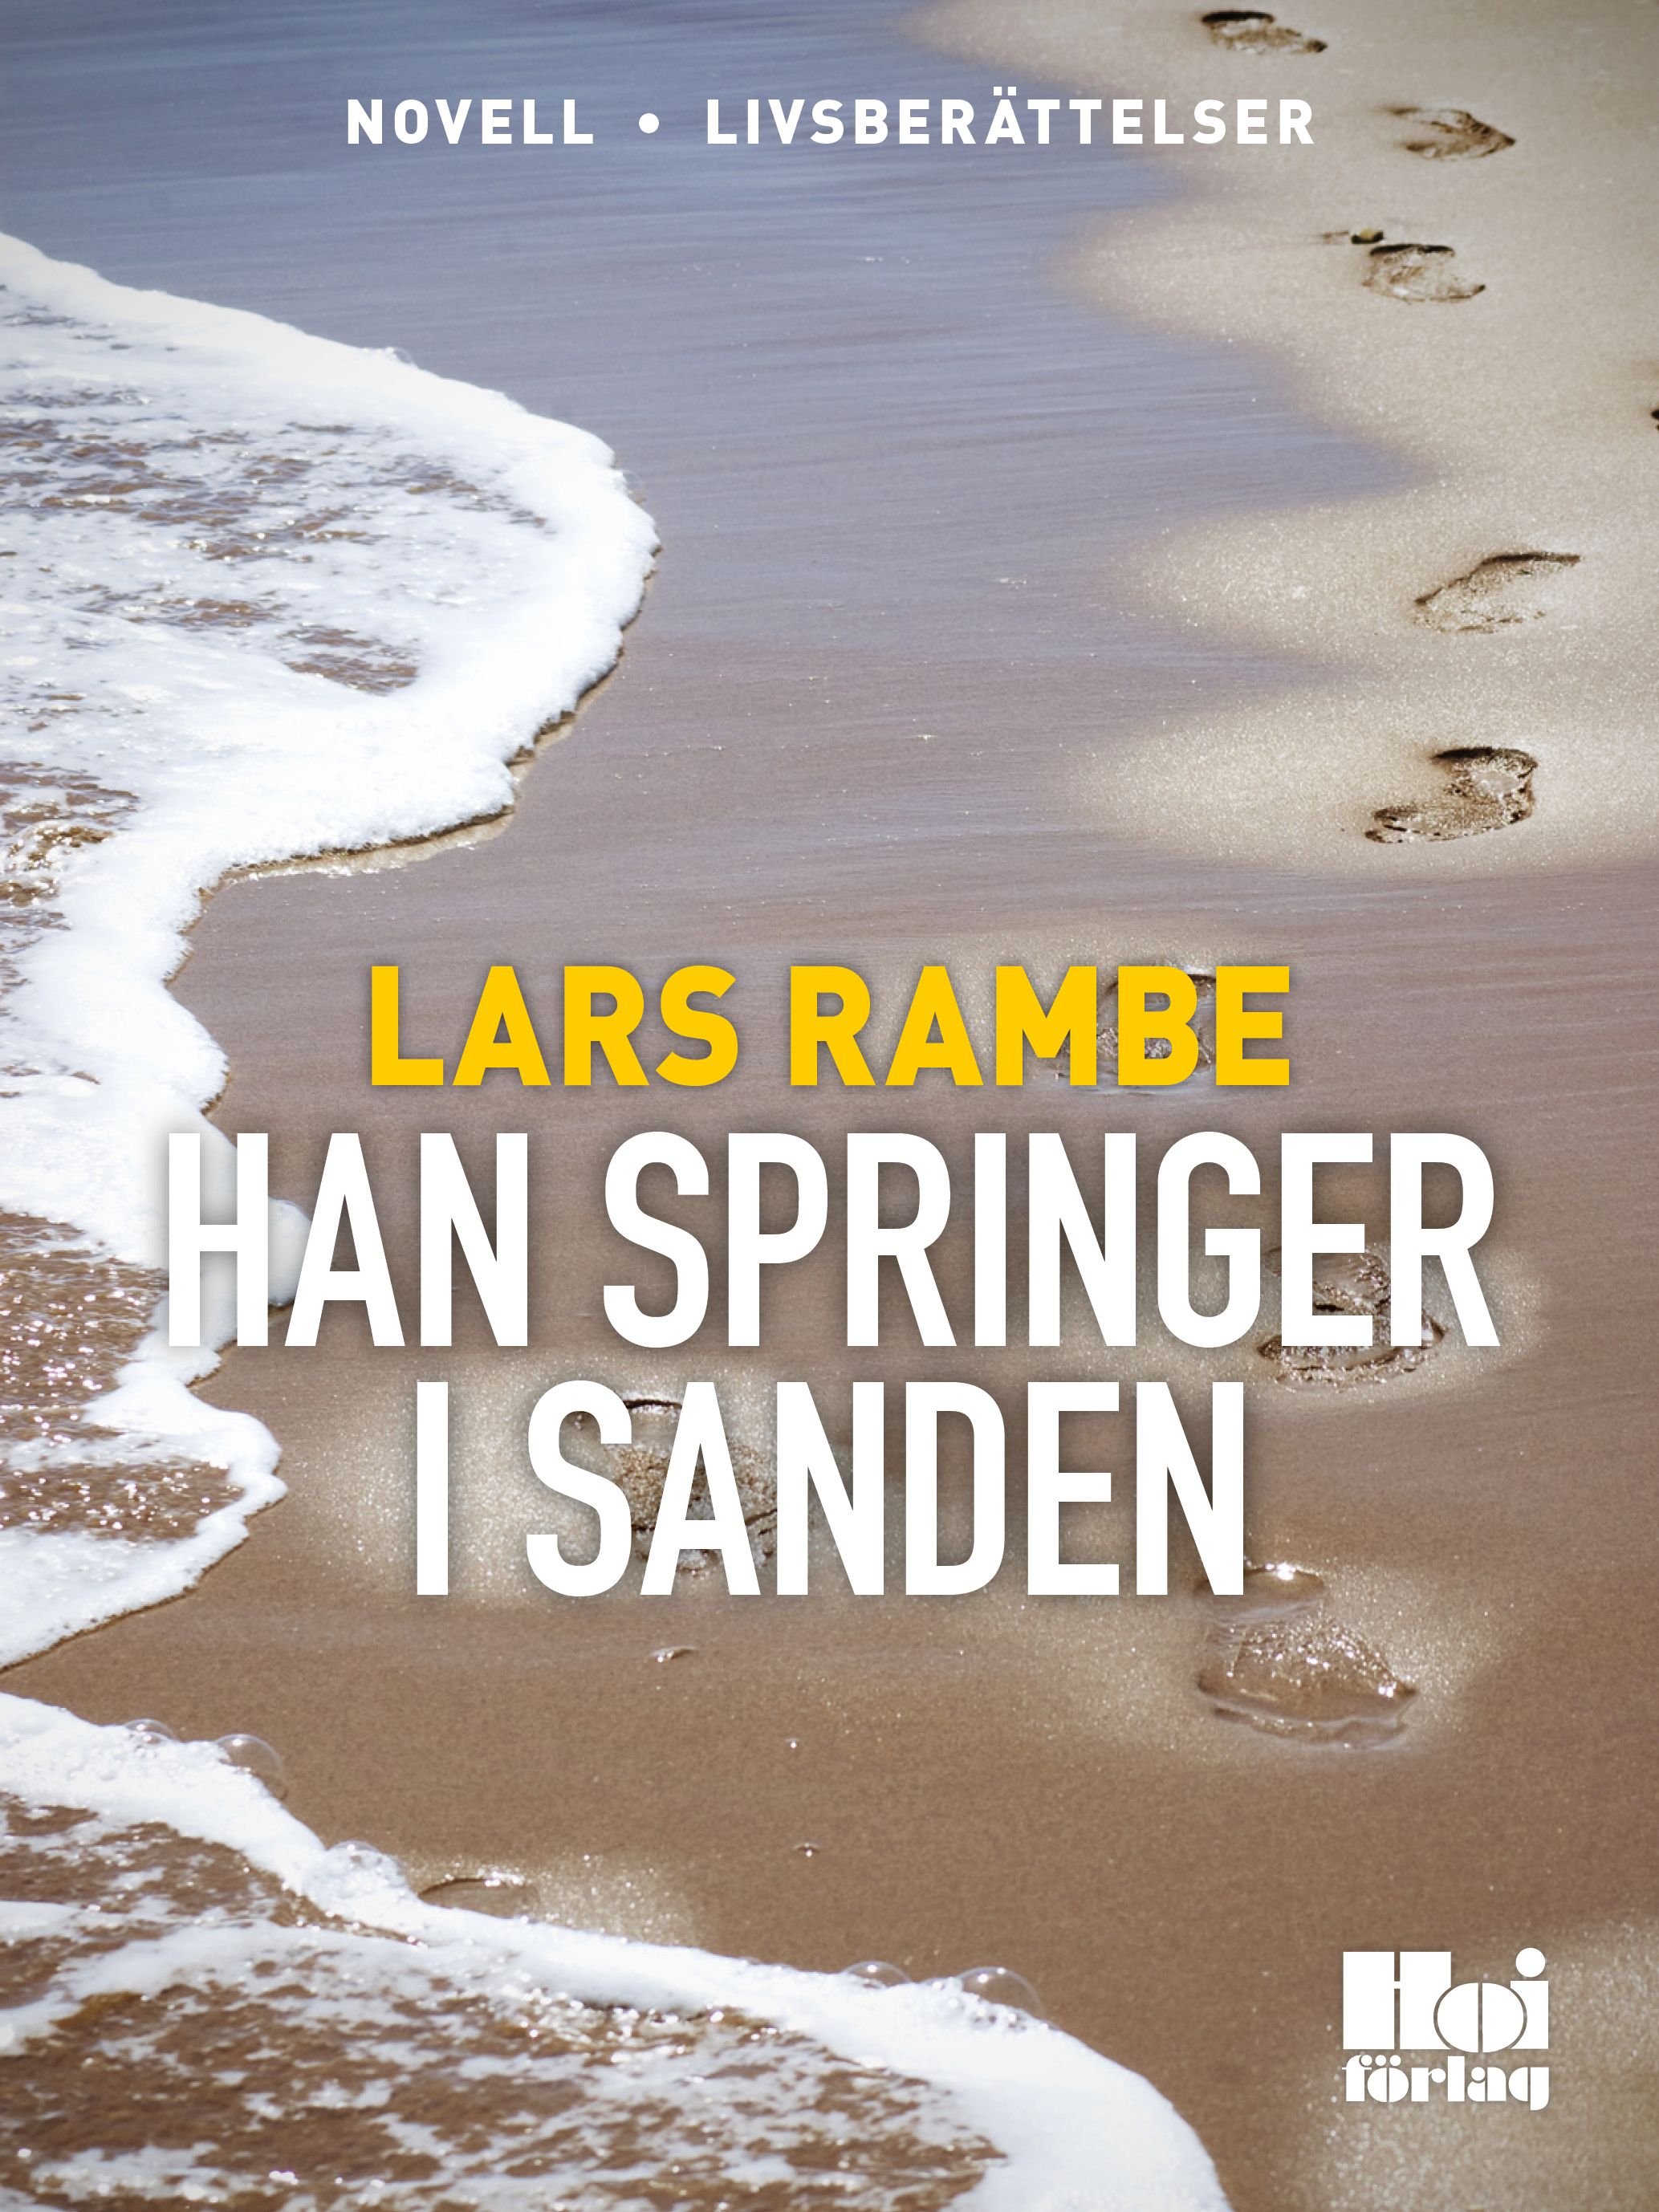 Han springer i sanden, e-bok av Lars Rambe